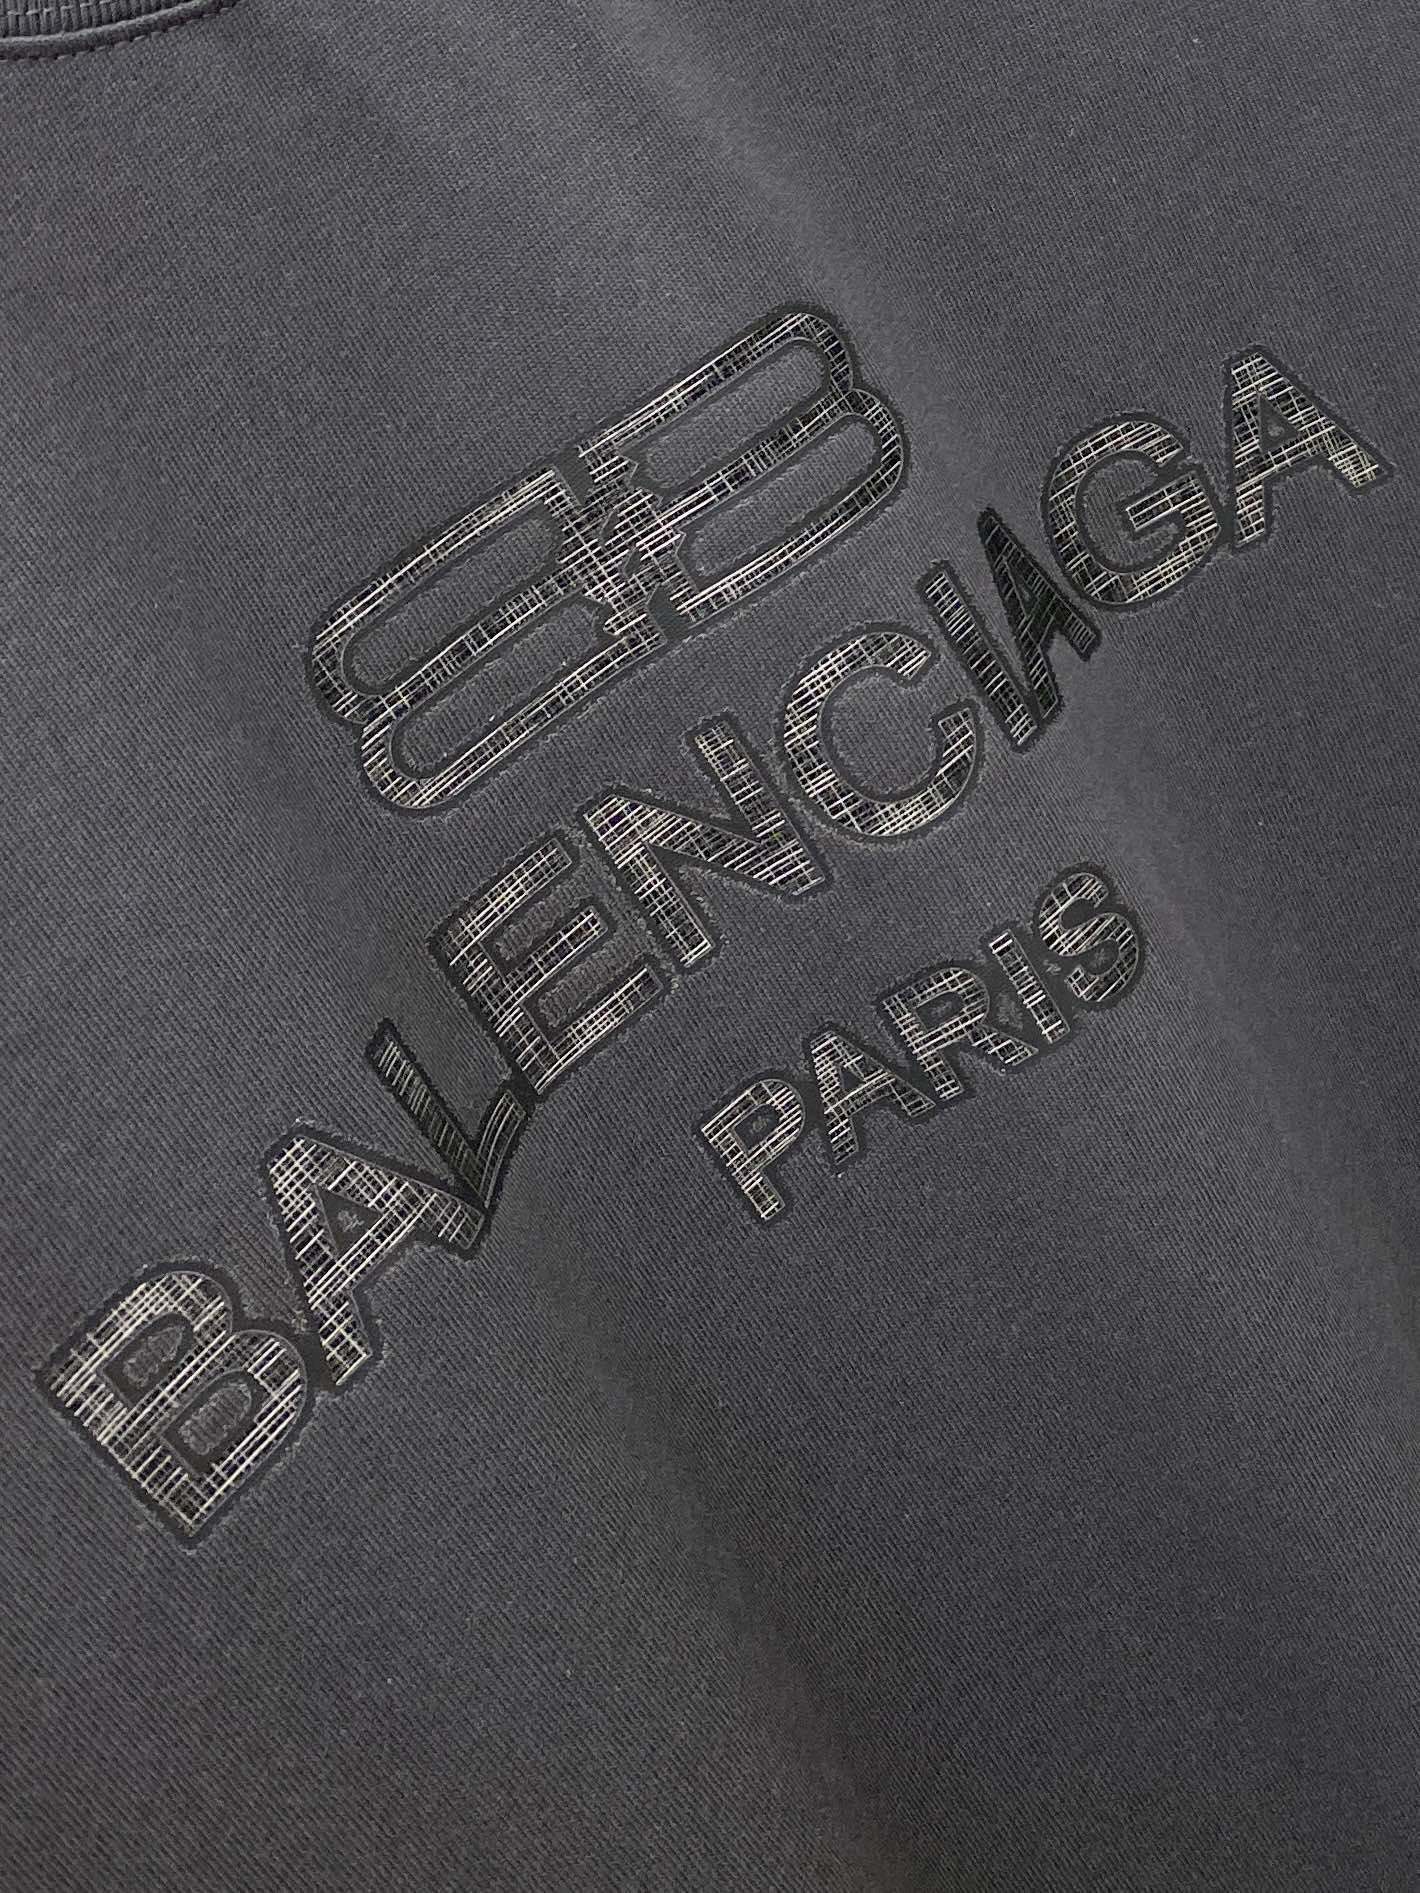 巴黎世家2024新品短袖T恤帅气时尚胸前顶级印胶印花图案字母logo简约百搭款面料棉不仅挺括保持潮流的廓